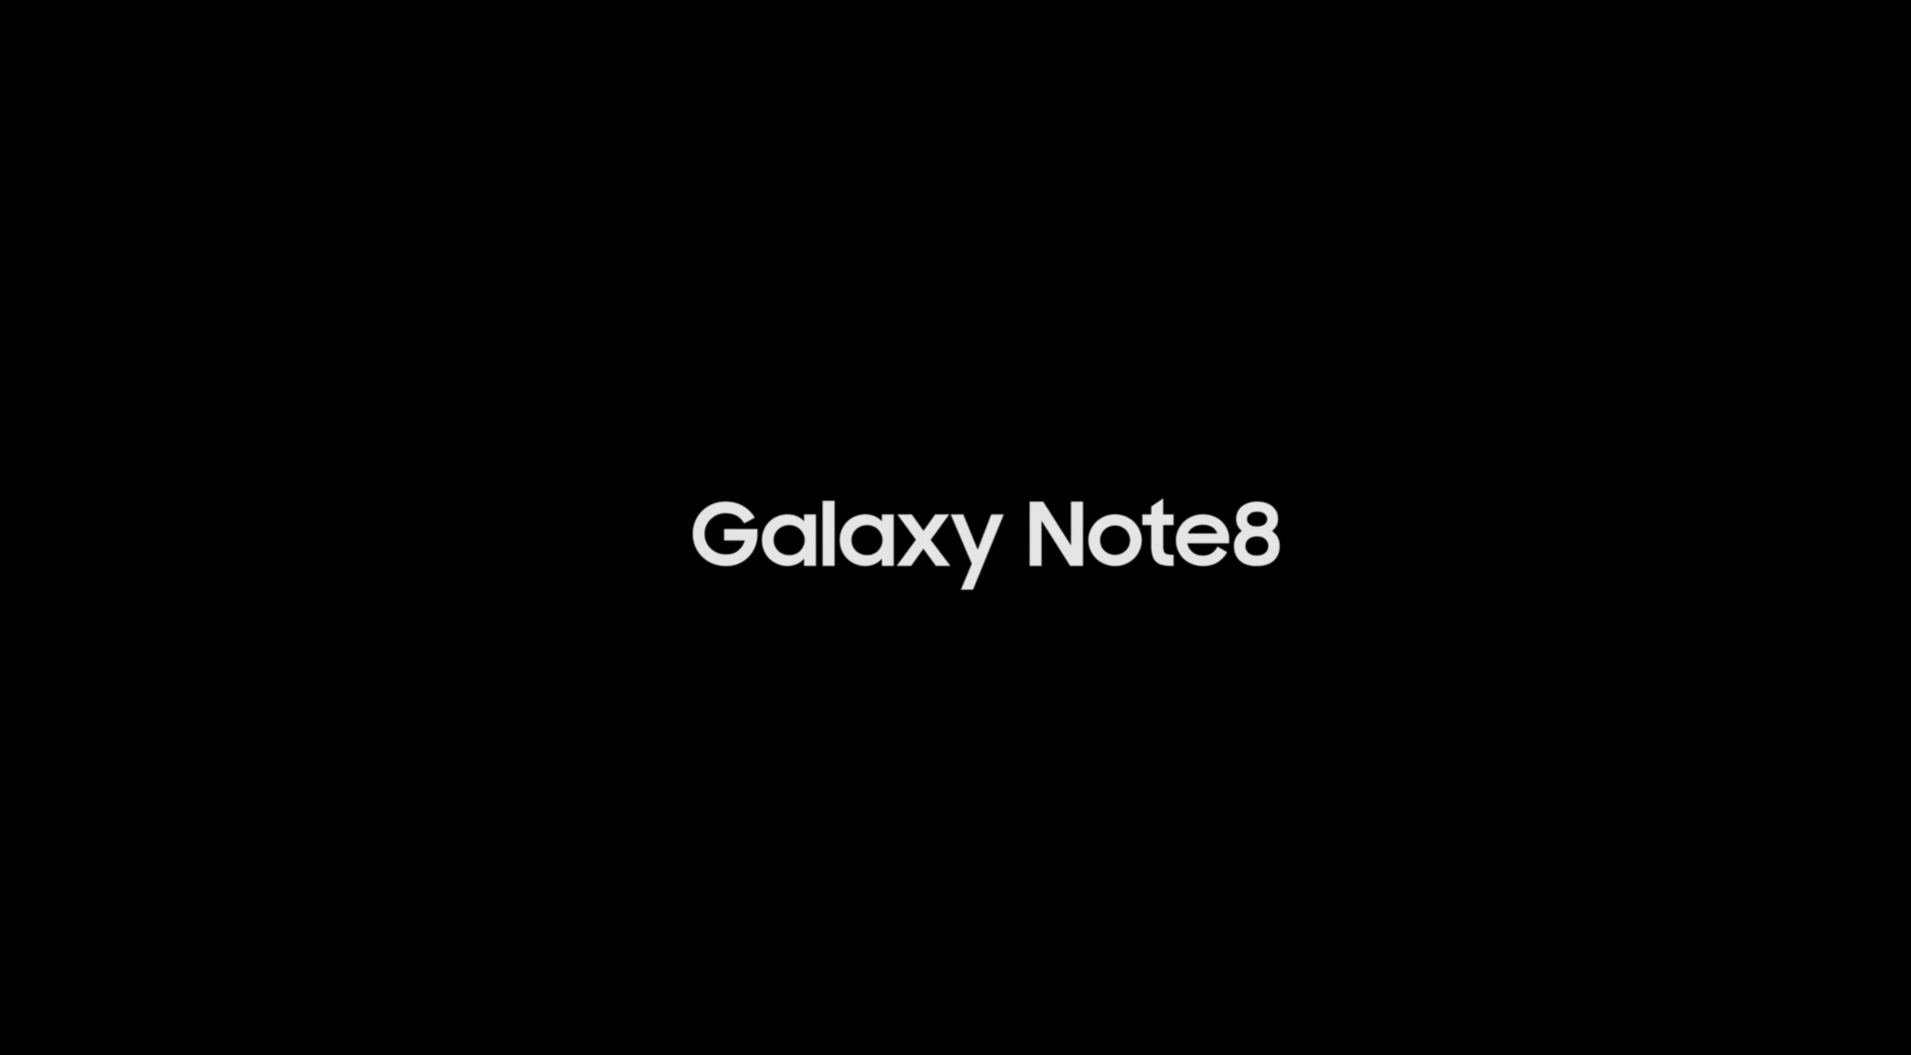 Samsung Galaxy Note: A bigger story